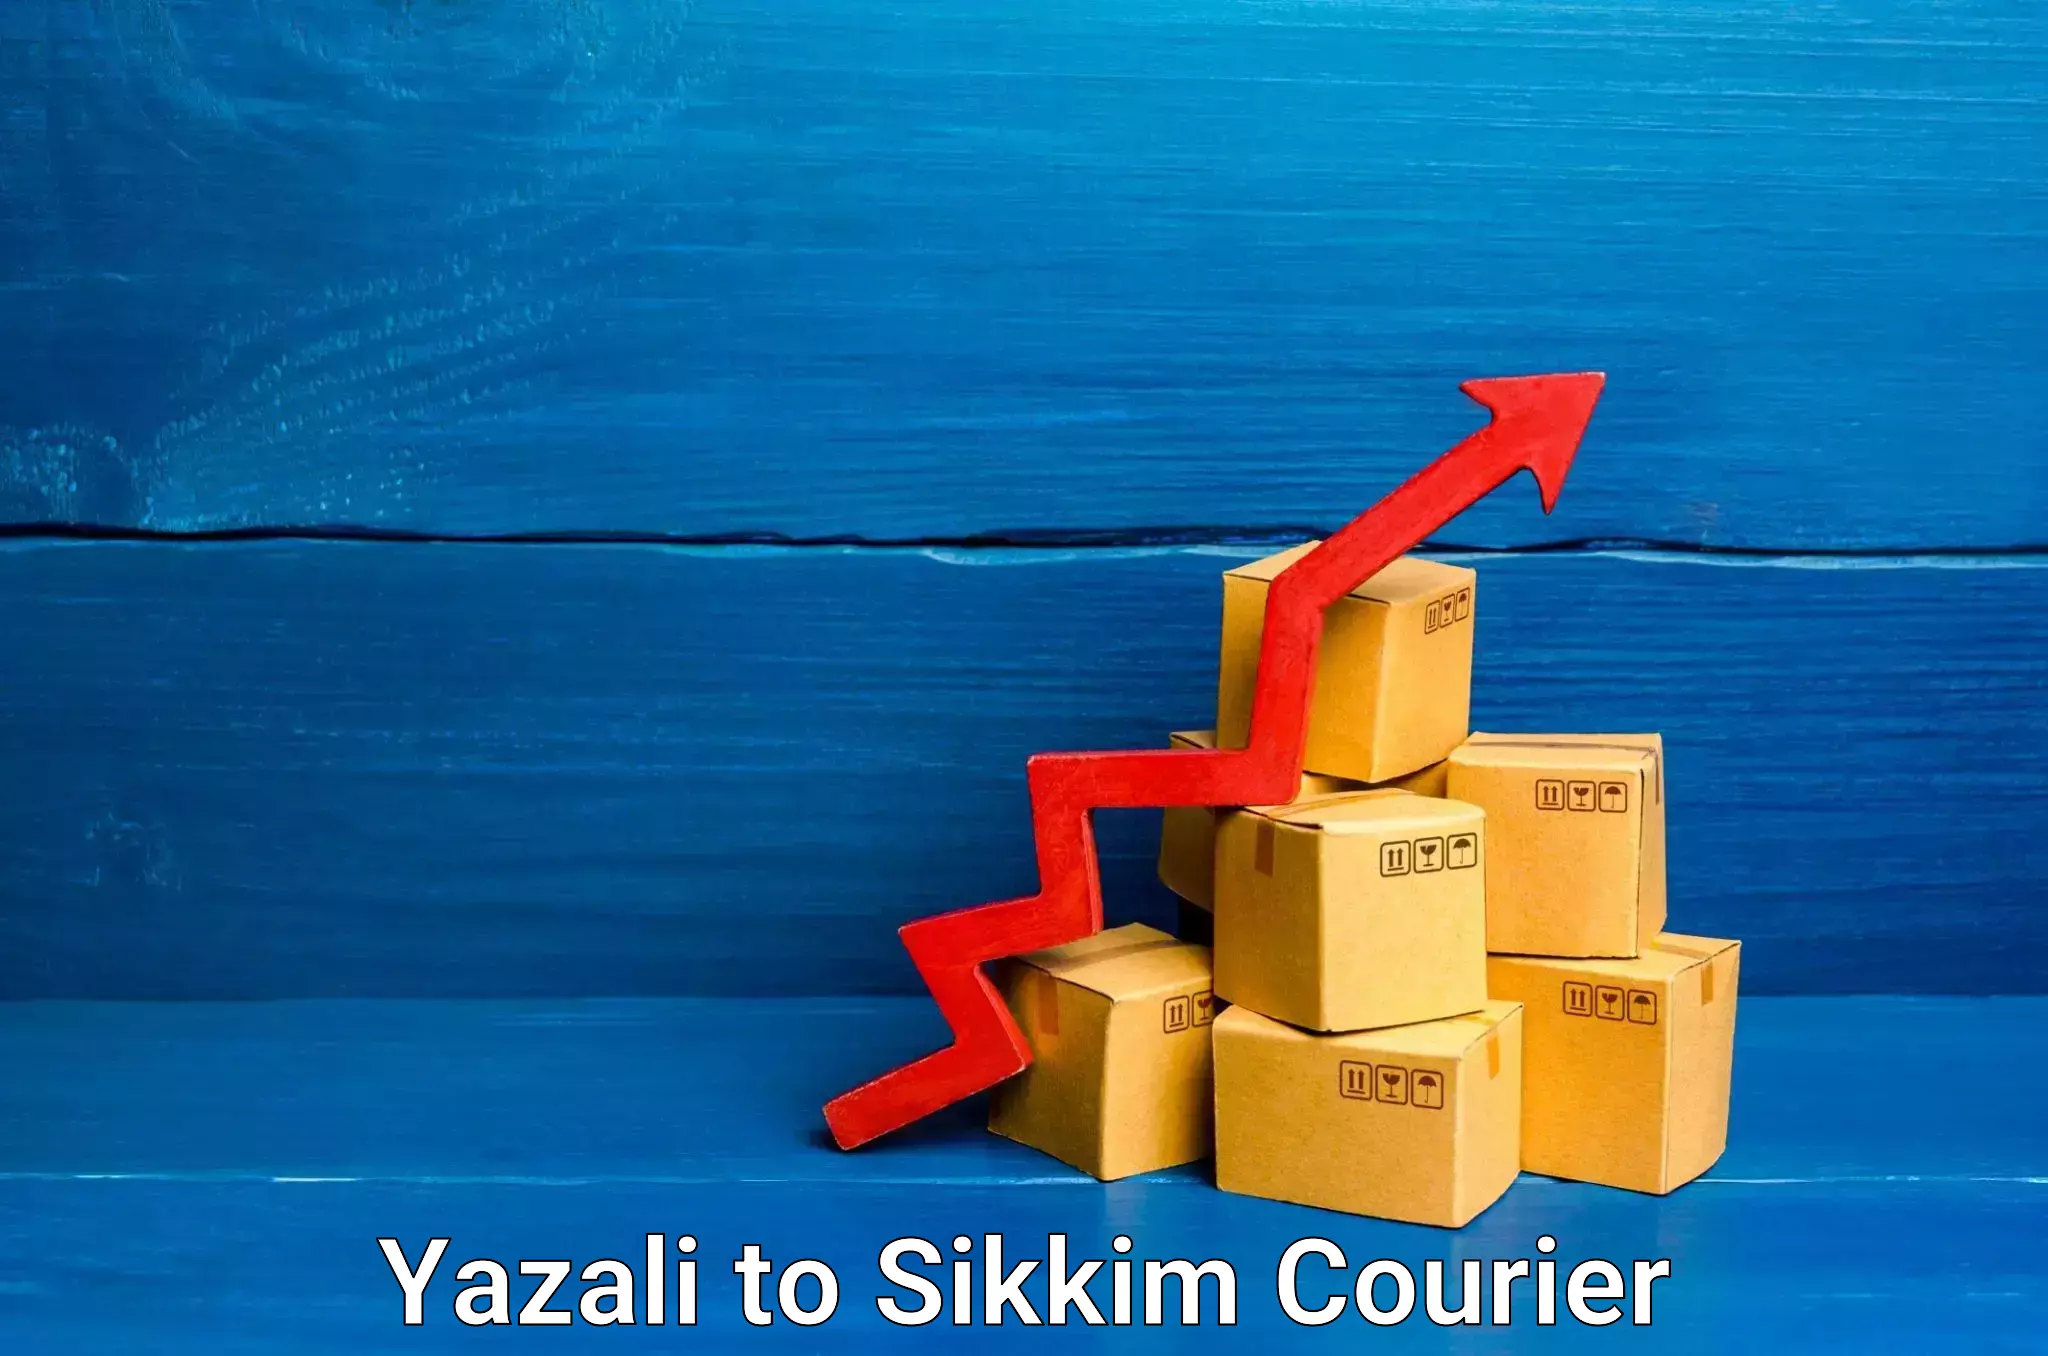 24-hour courier service Yazali to North Sikkim